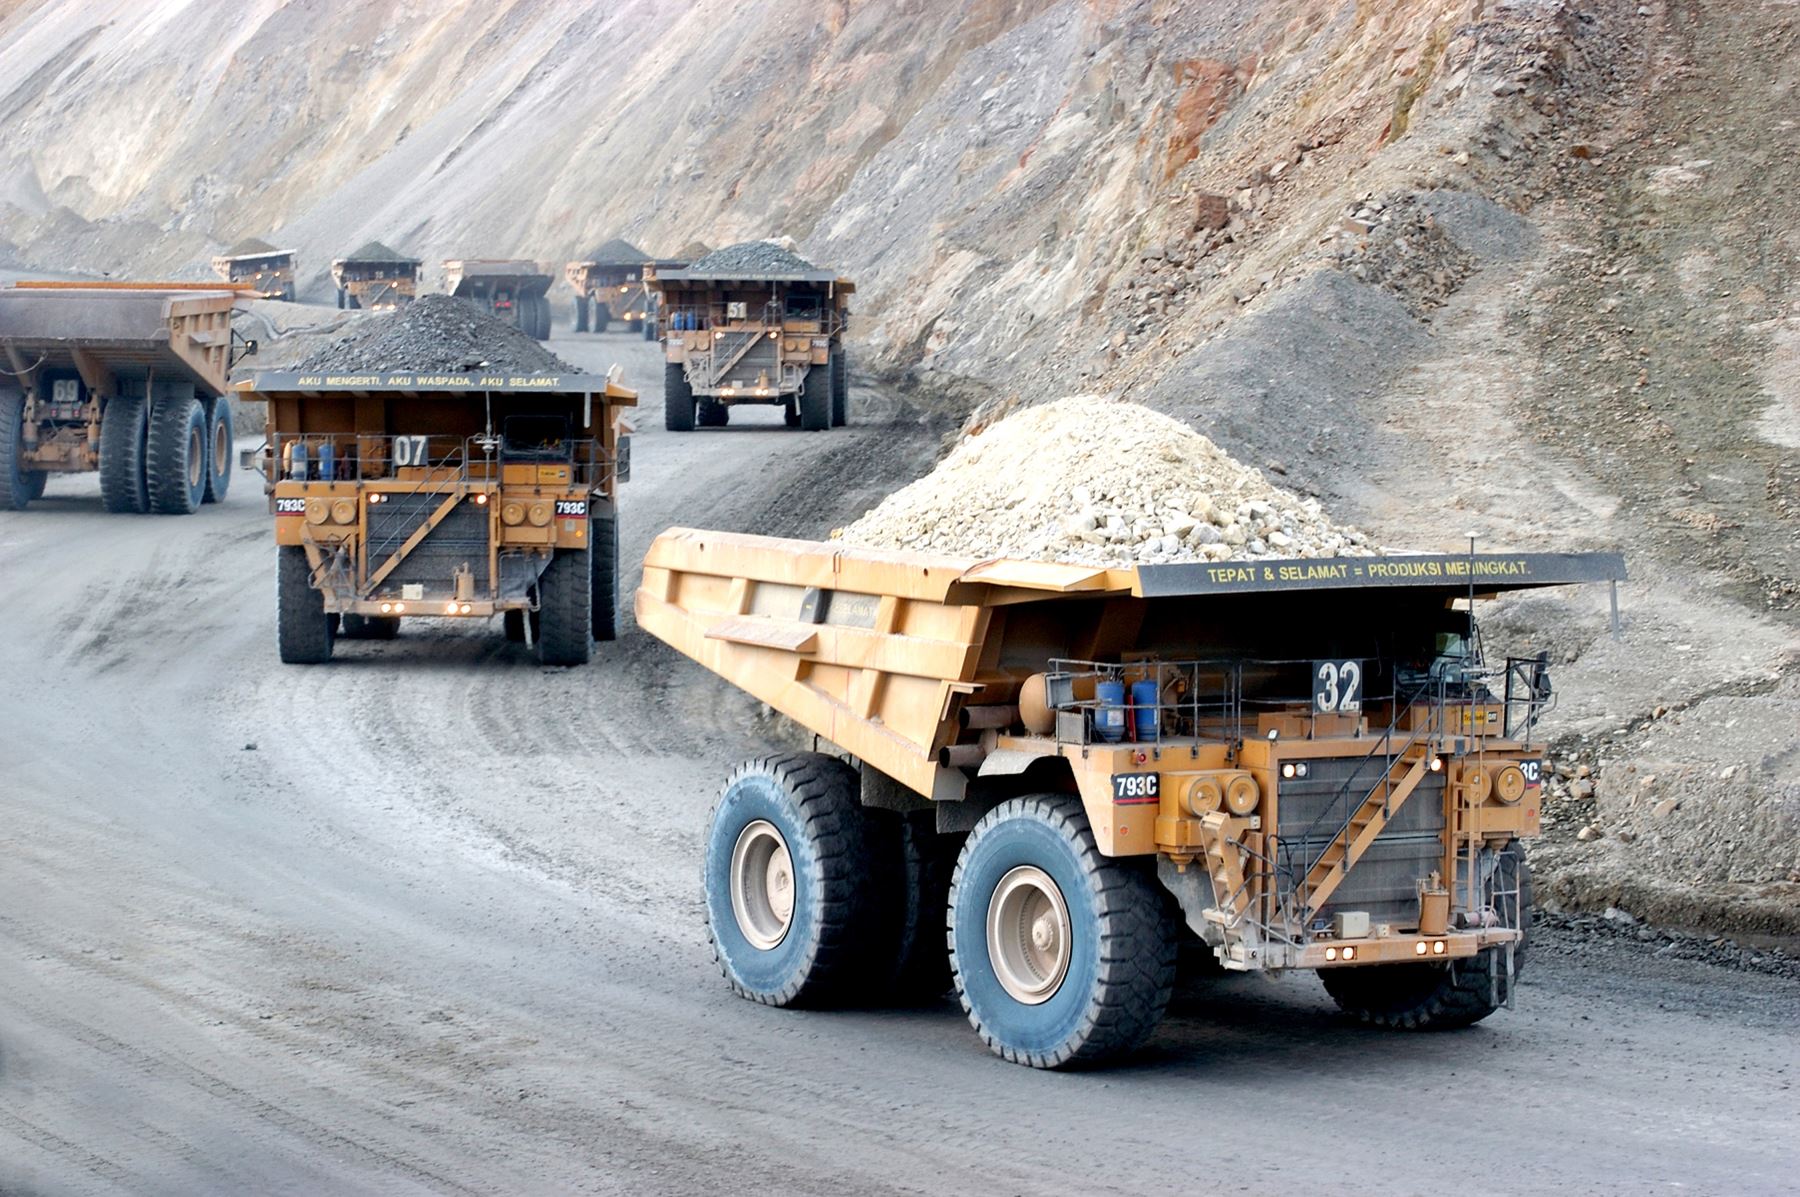 Minem: El Perú es un destino minero destacado a nivel global